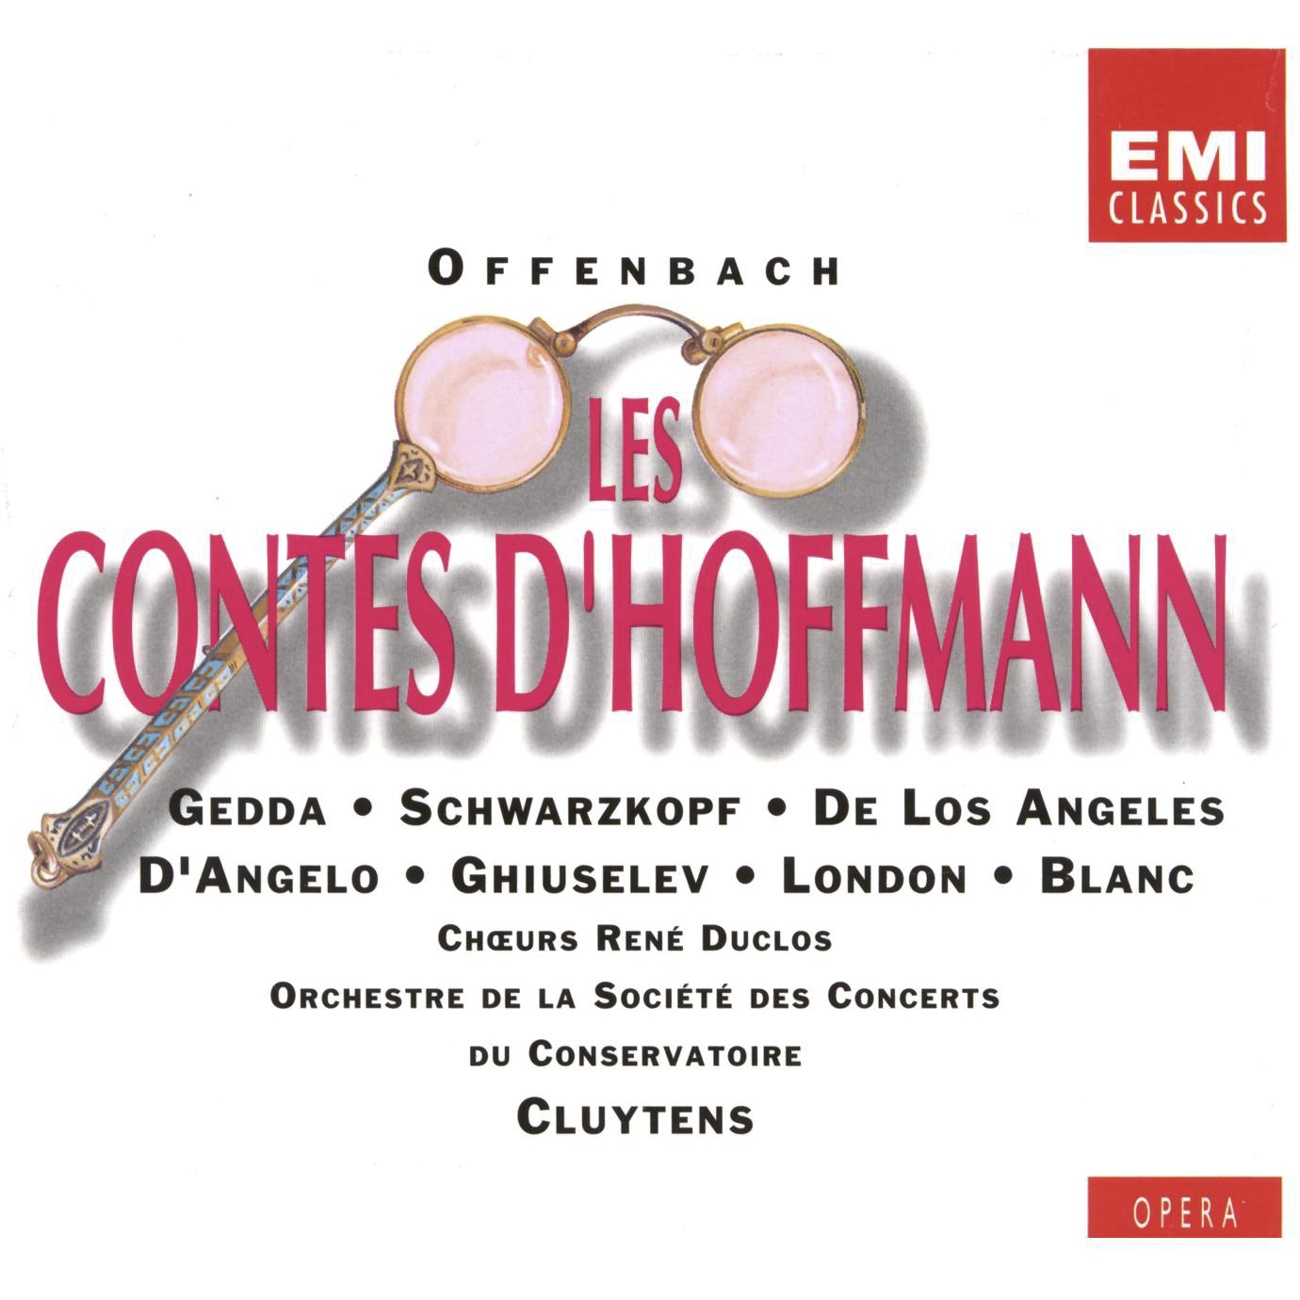 Les Contes d' Hoffmann 1989 Digital Remaster, TROISIEME ACTE ACT THREE DRITTER AKT: Schle mil!... J' en e tais sur! Giulietta Sche